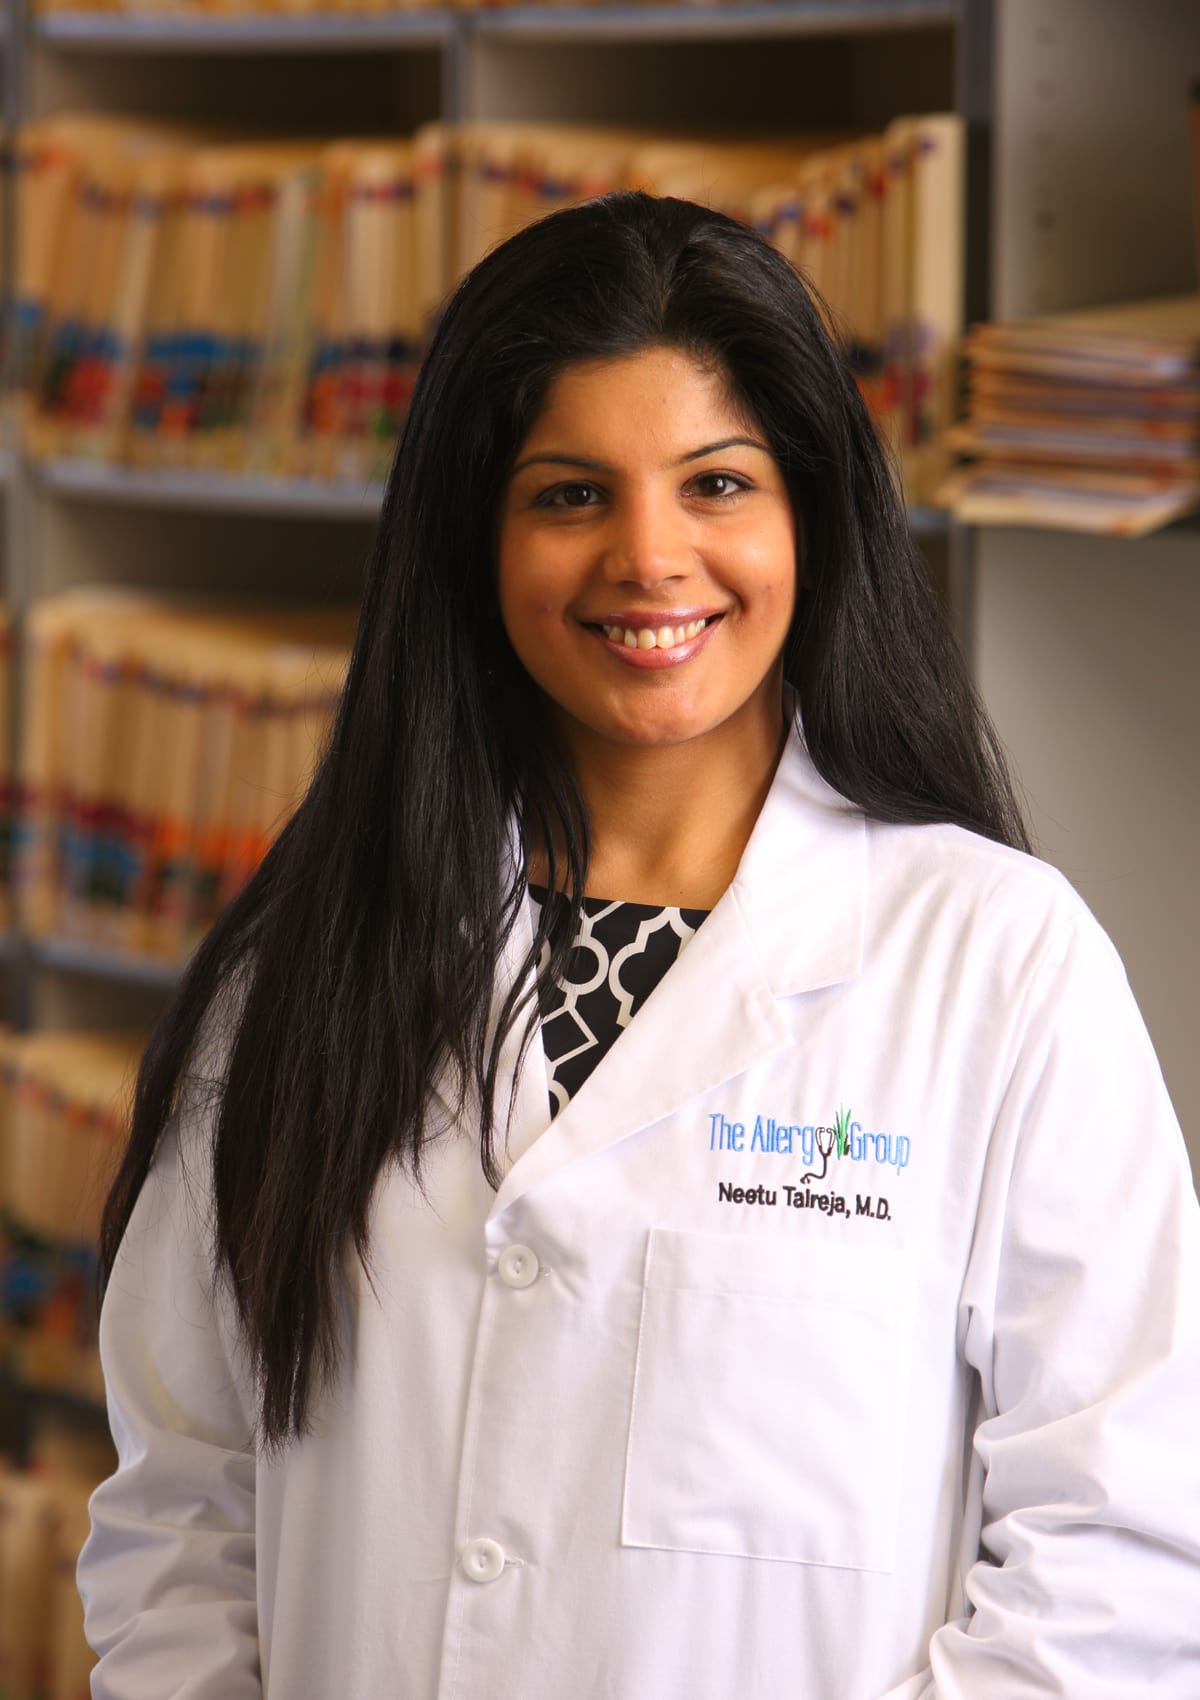 Dr. Neetu Talreja, MD